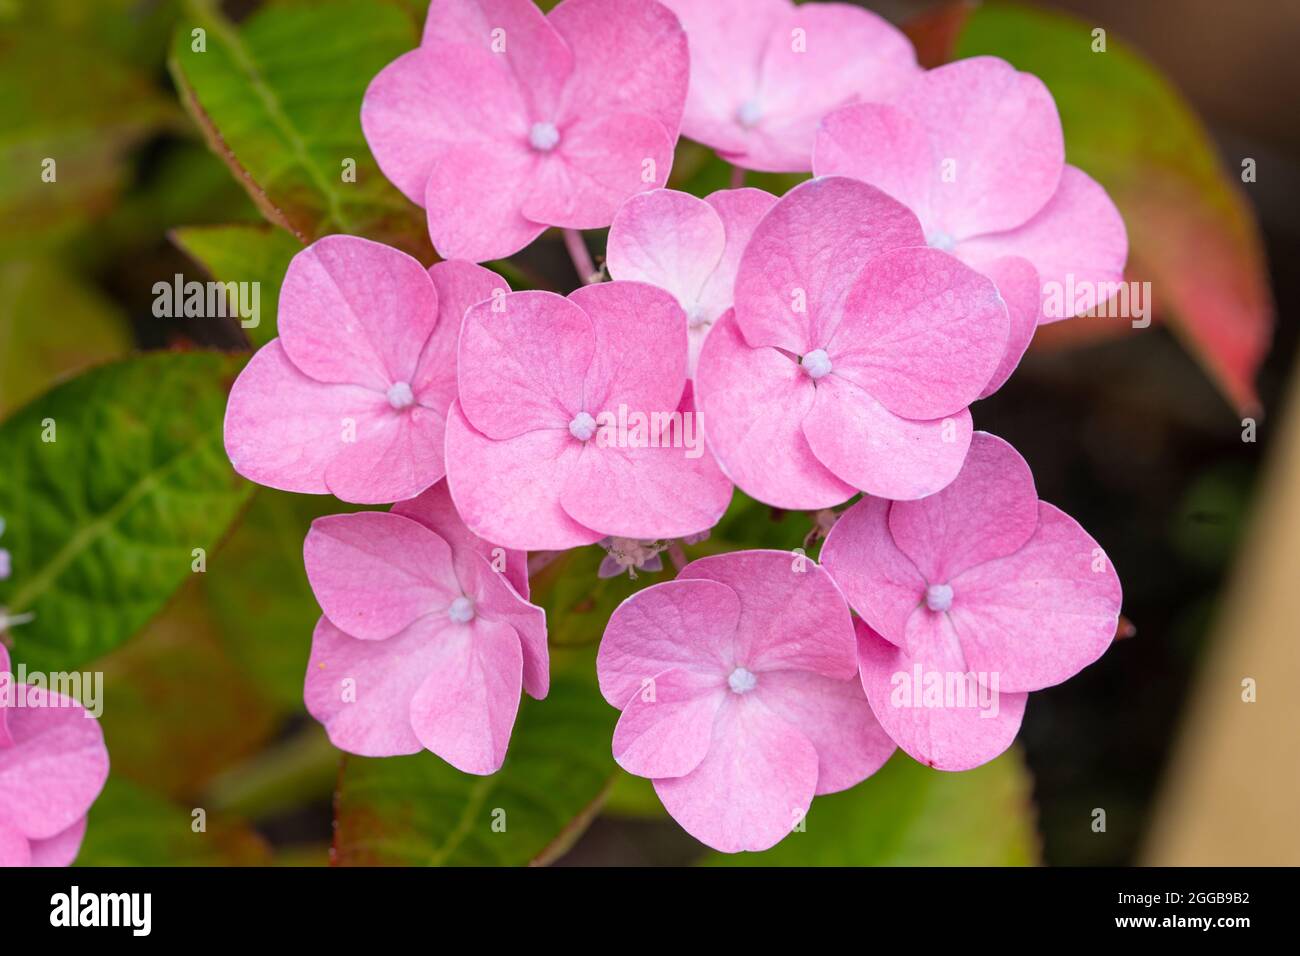 Eine Nahaufnahme von blassrosa Hydrangea macrophylla (thunb.) ser Blüten aus der Familie der Hydrangeaceae. Wächst in einem englischen Garten im August, Großbritannien Stockfoto